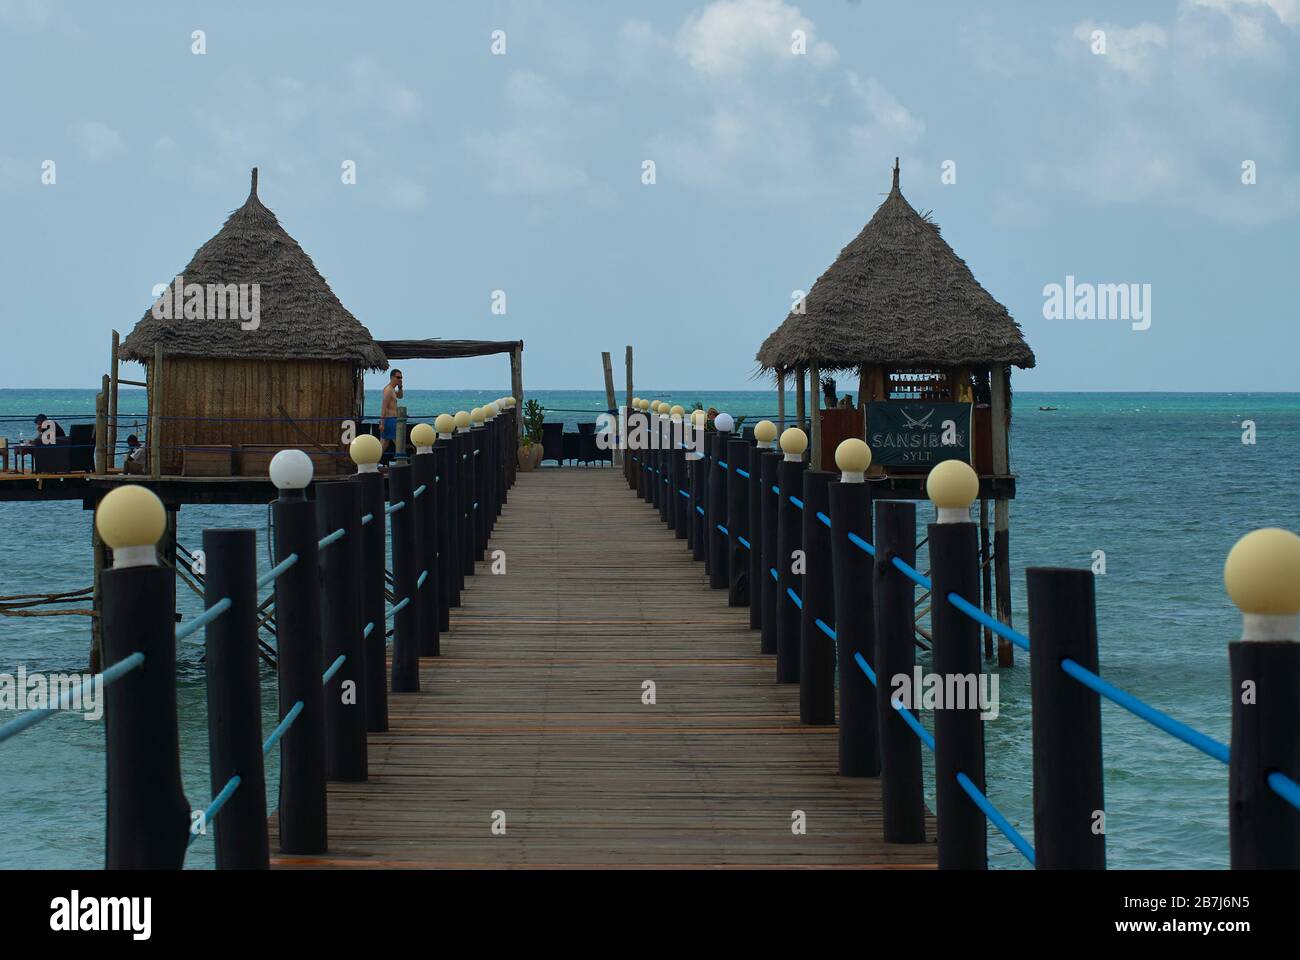 Jetty restaurant and bar of a beach lodge, Zanzibar Stock Photo